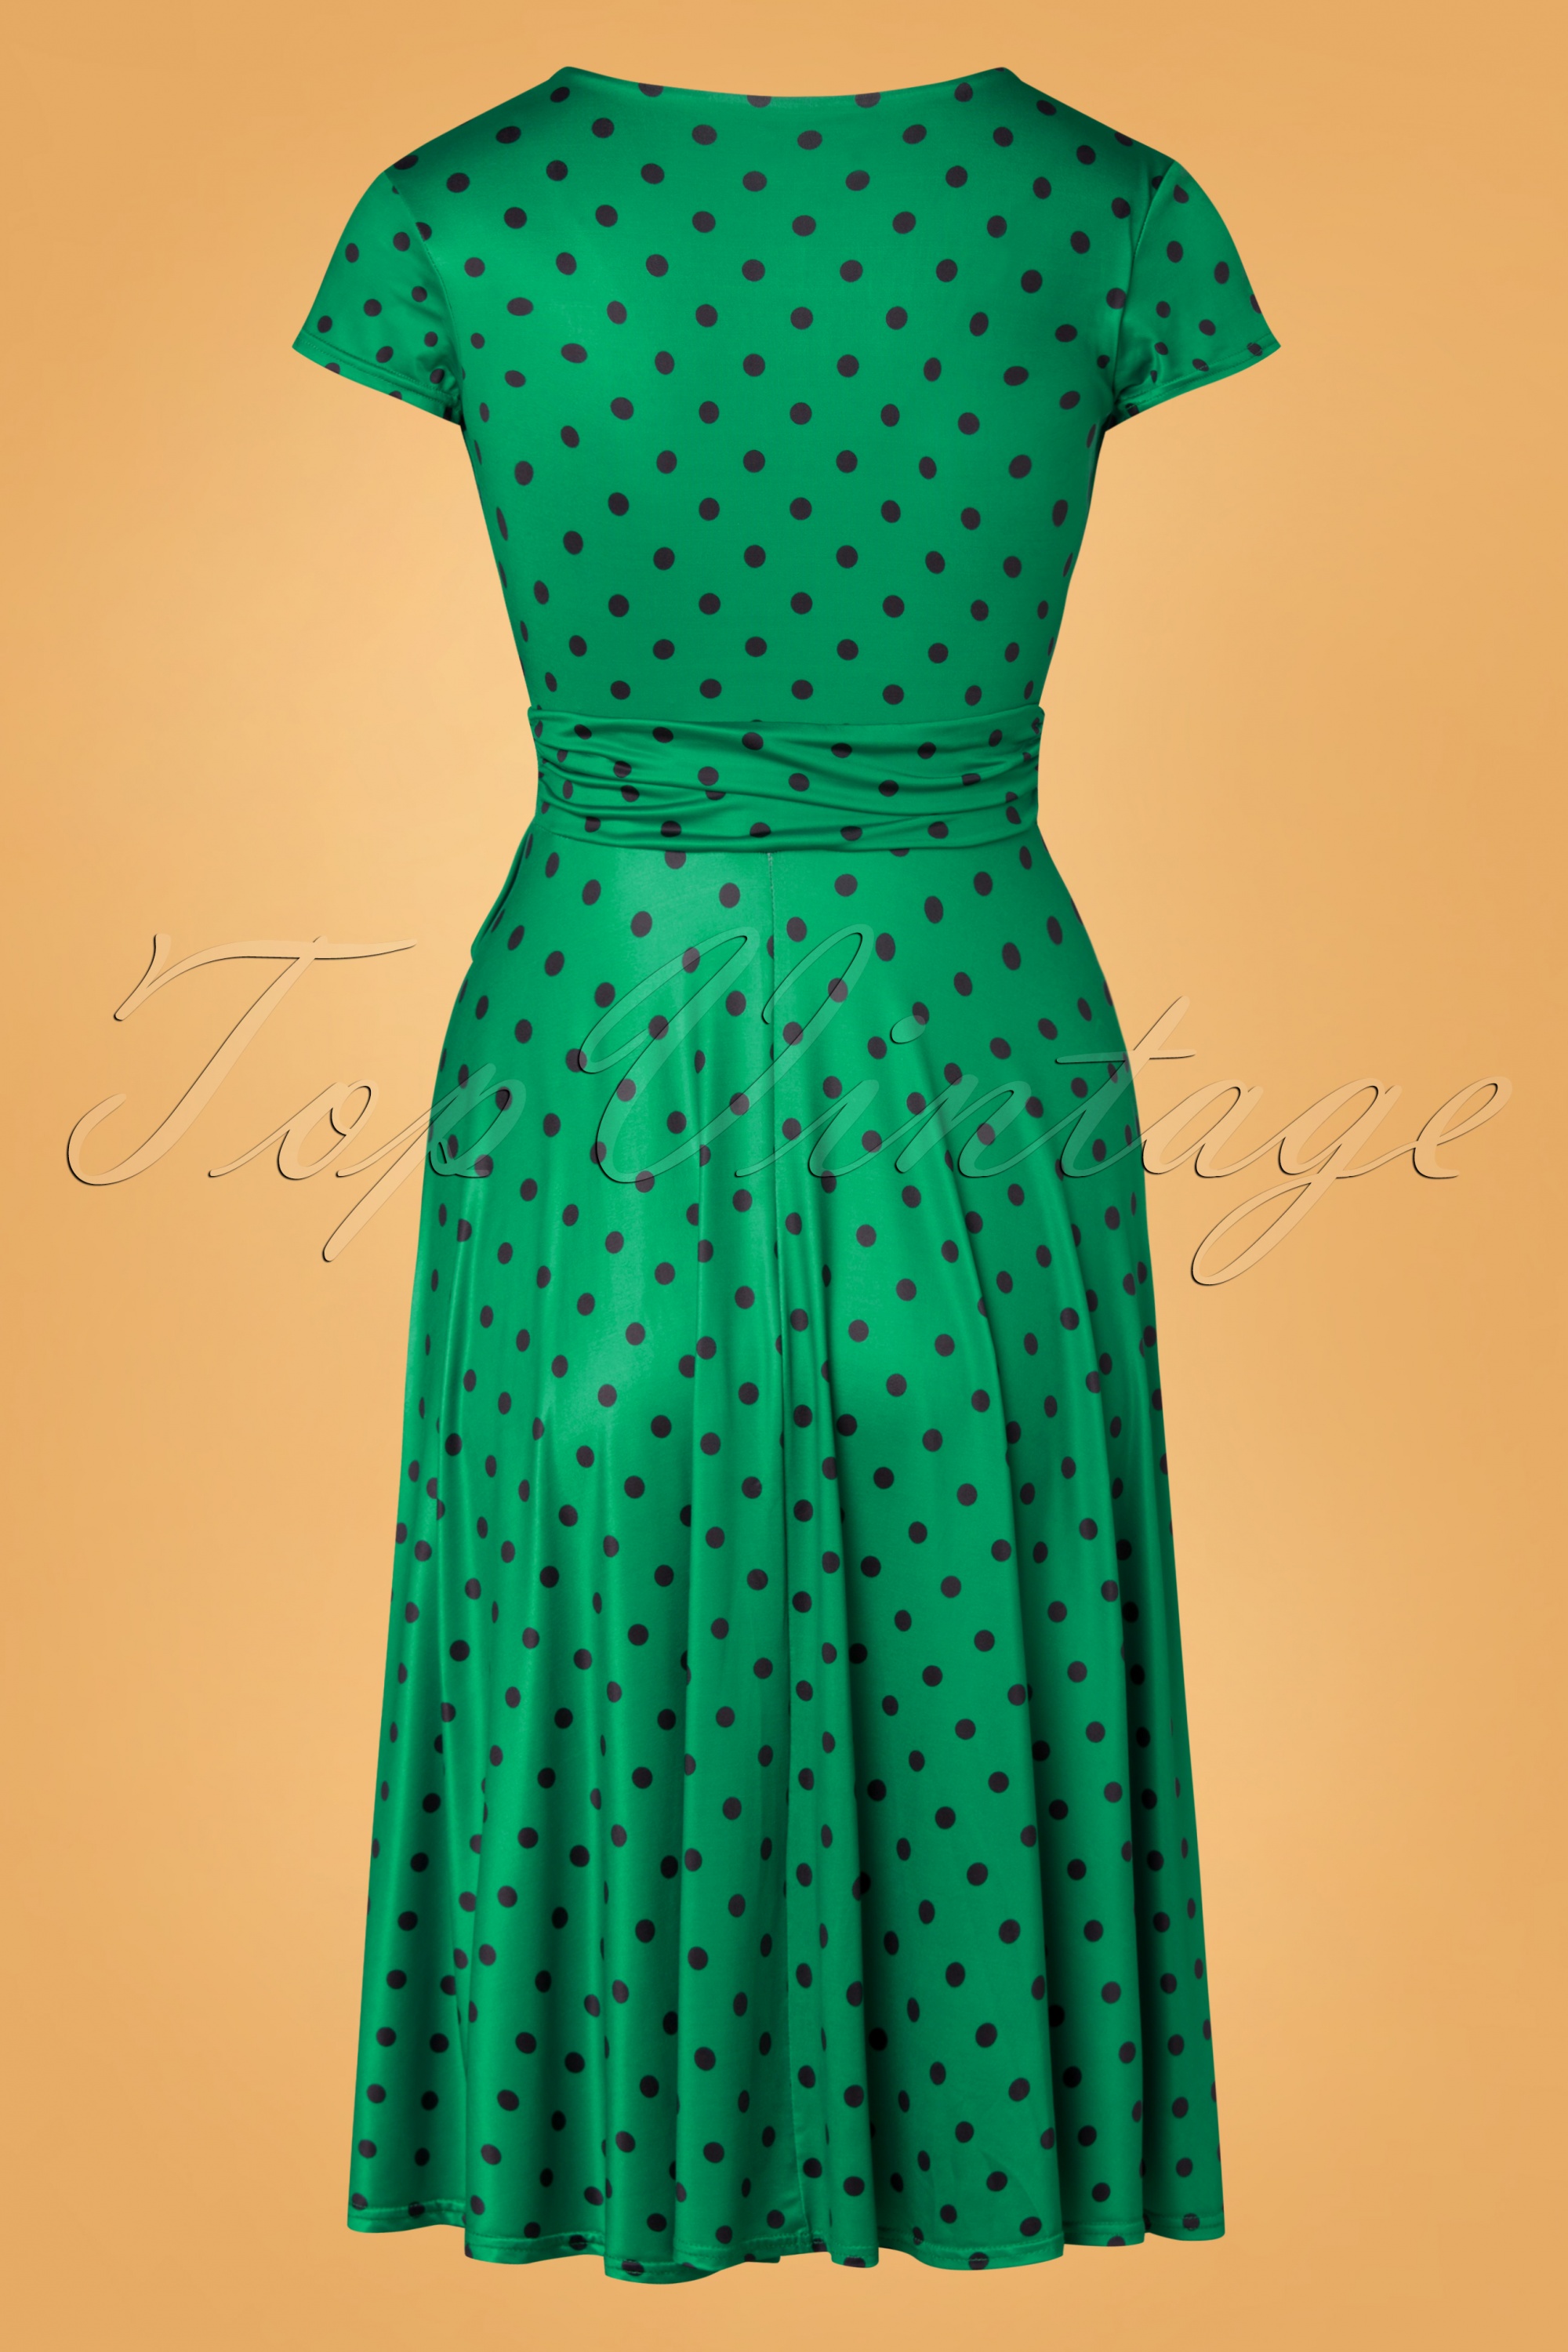 Vintage Chic for Topvintage - Caryl swingjurk met polkadots in smaragdgroen 2